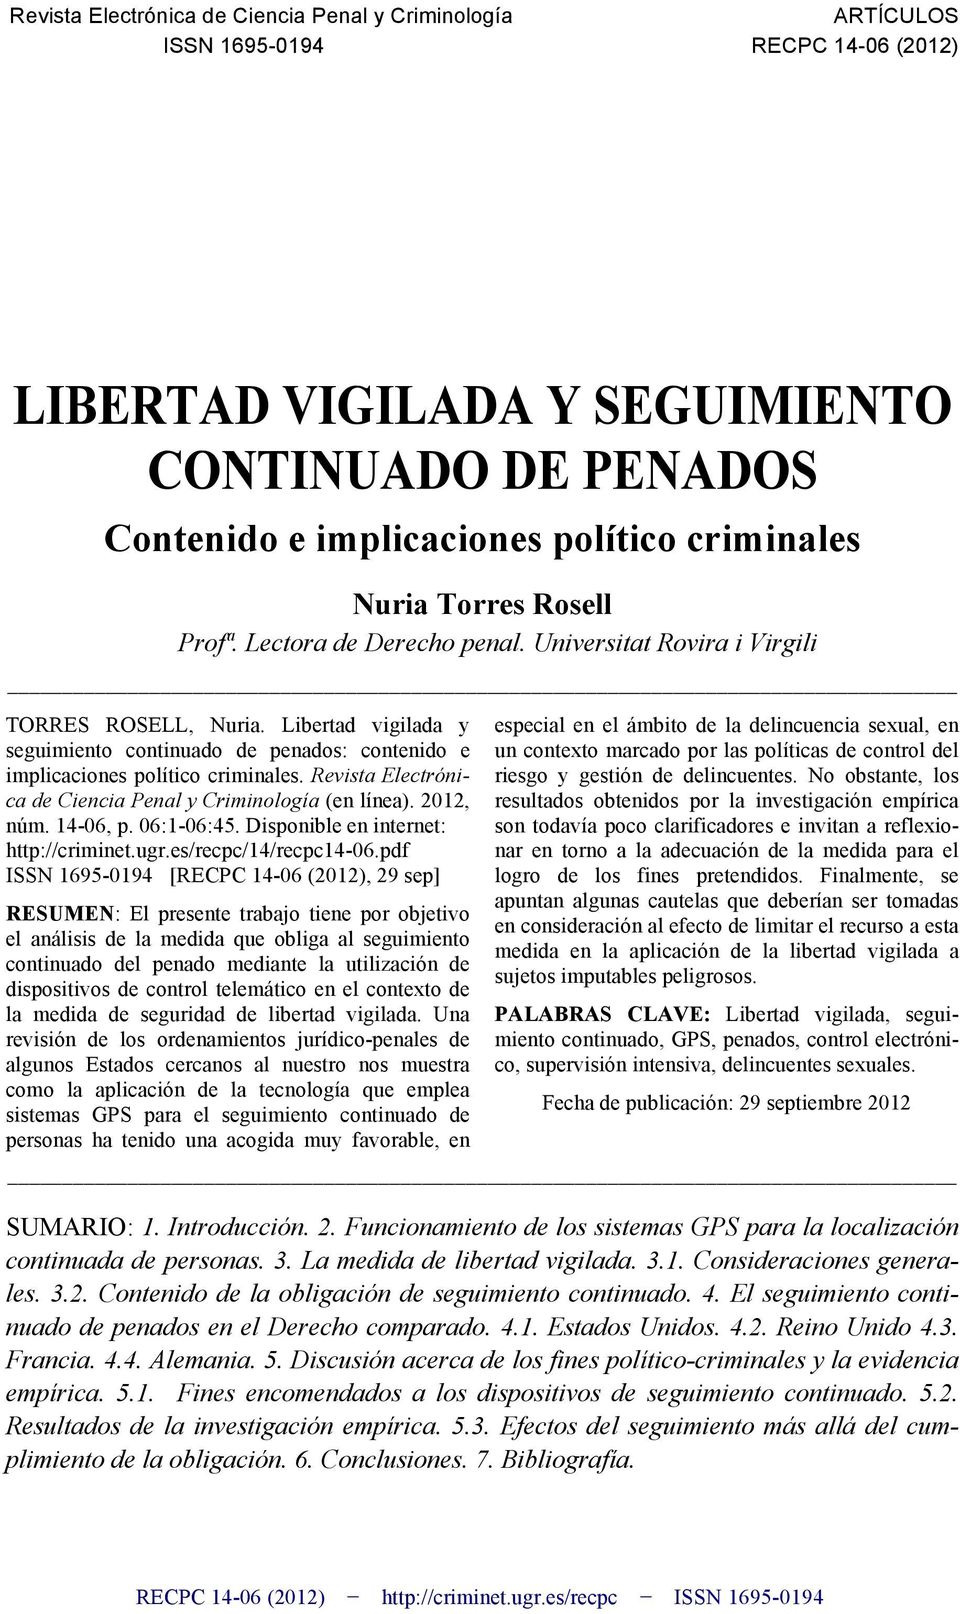 Revista Electrónica de Ciencia Penal y Criminología (en línea). 2012, núm. 14-06, p. 06:1-06:45. Disponible en internet: http://criminet.ugr.es/recpc/14/recpc14-06.